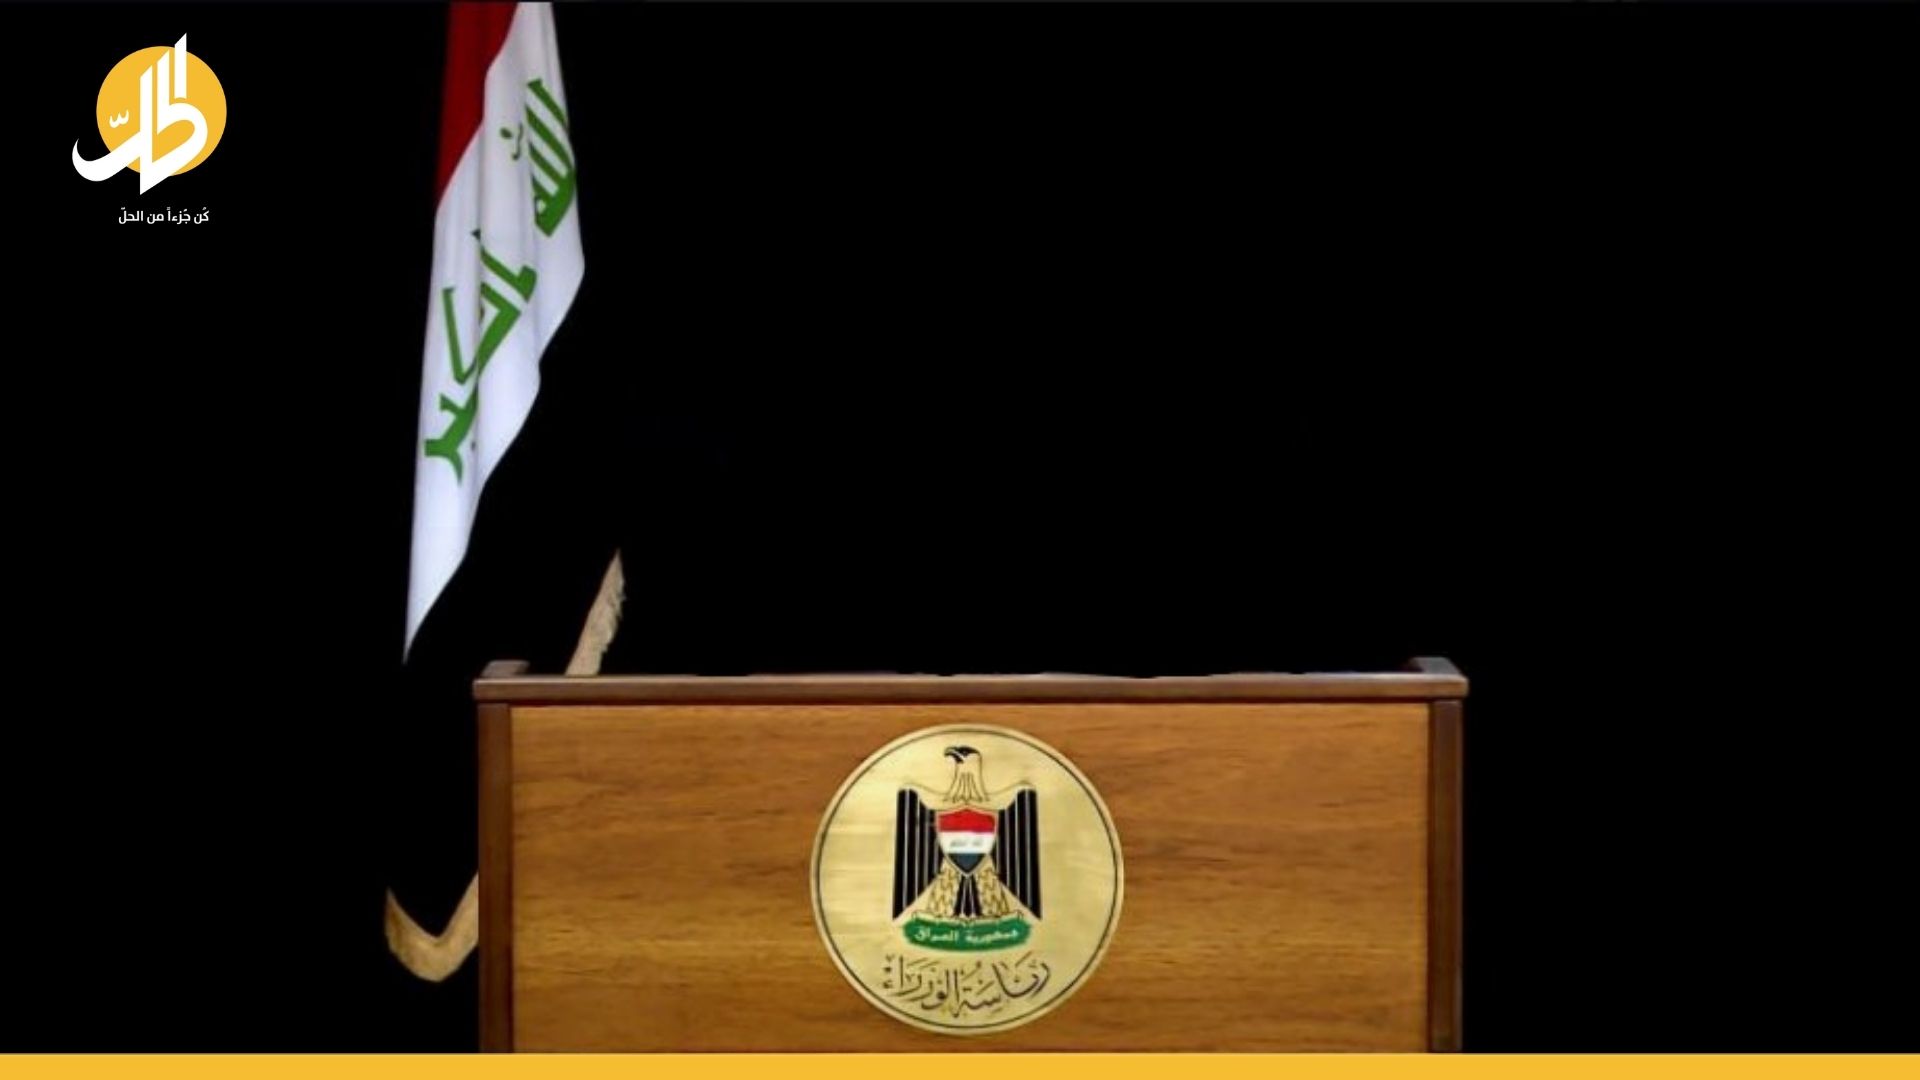 حسم مرشح رئاسة الحكومة العراقية خلال 72 ساعة